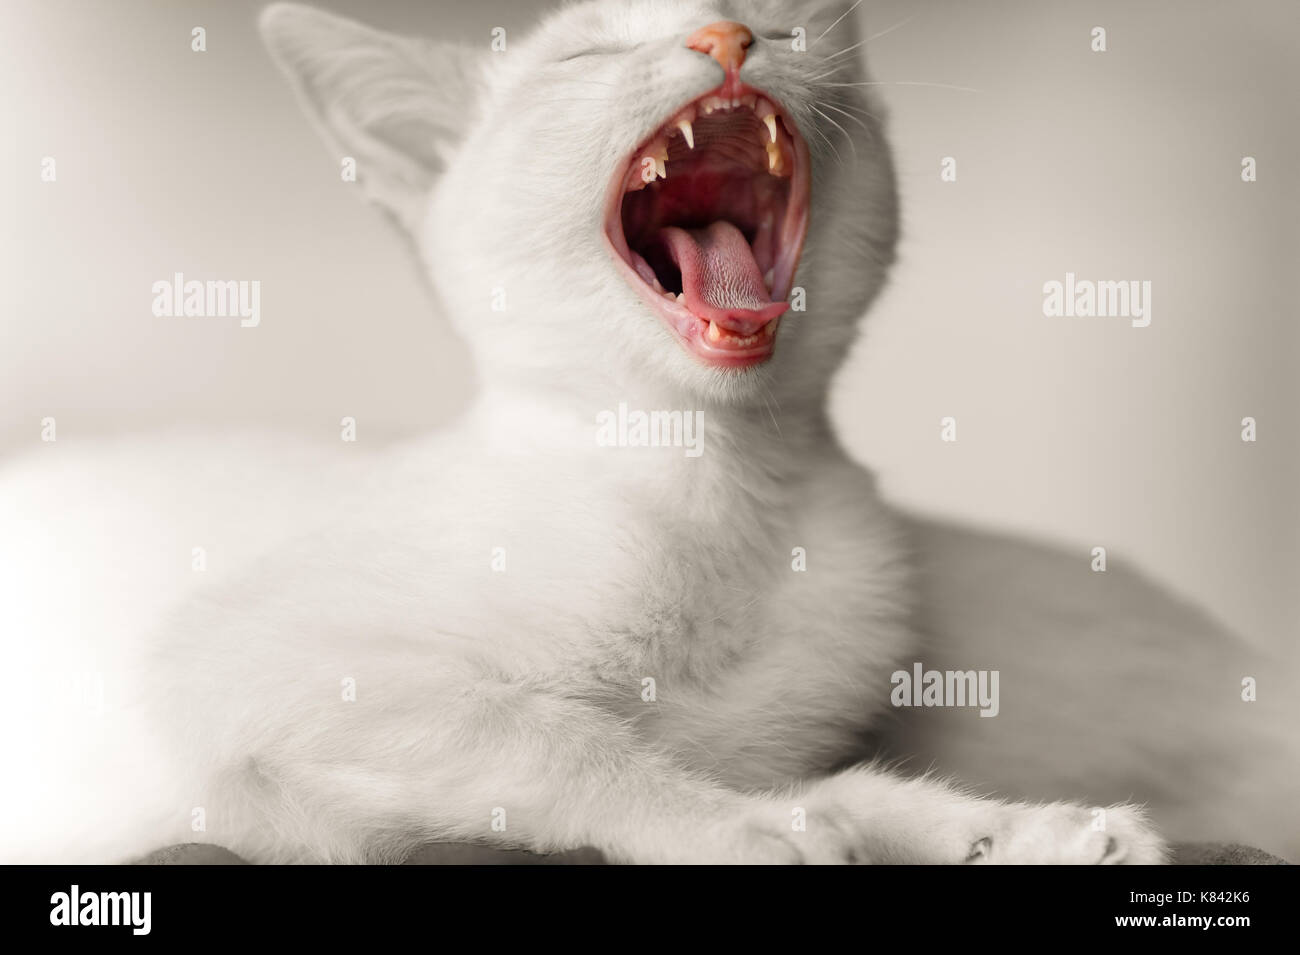 Kätzchen Katze wütend ist ein cute adorable white Kitty Cat suchen heftig mit Zähnen und Mund weit geöffnet. Stockfoto